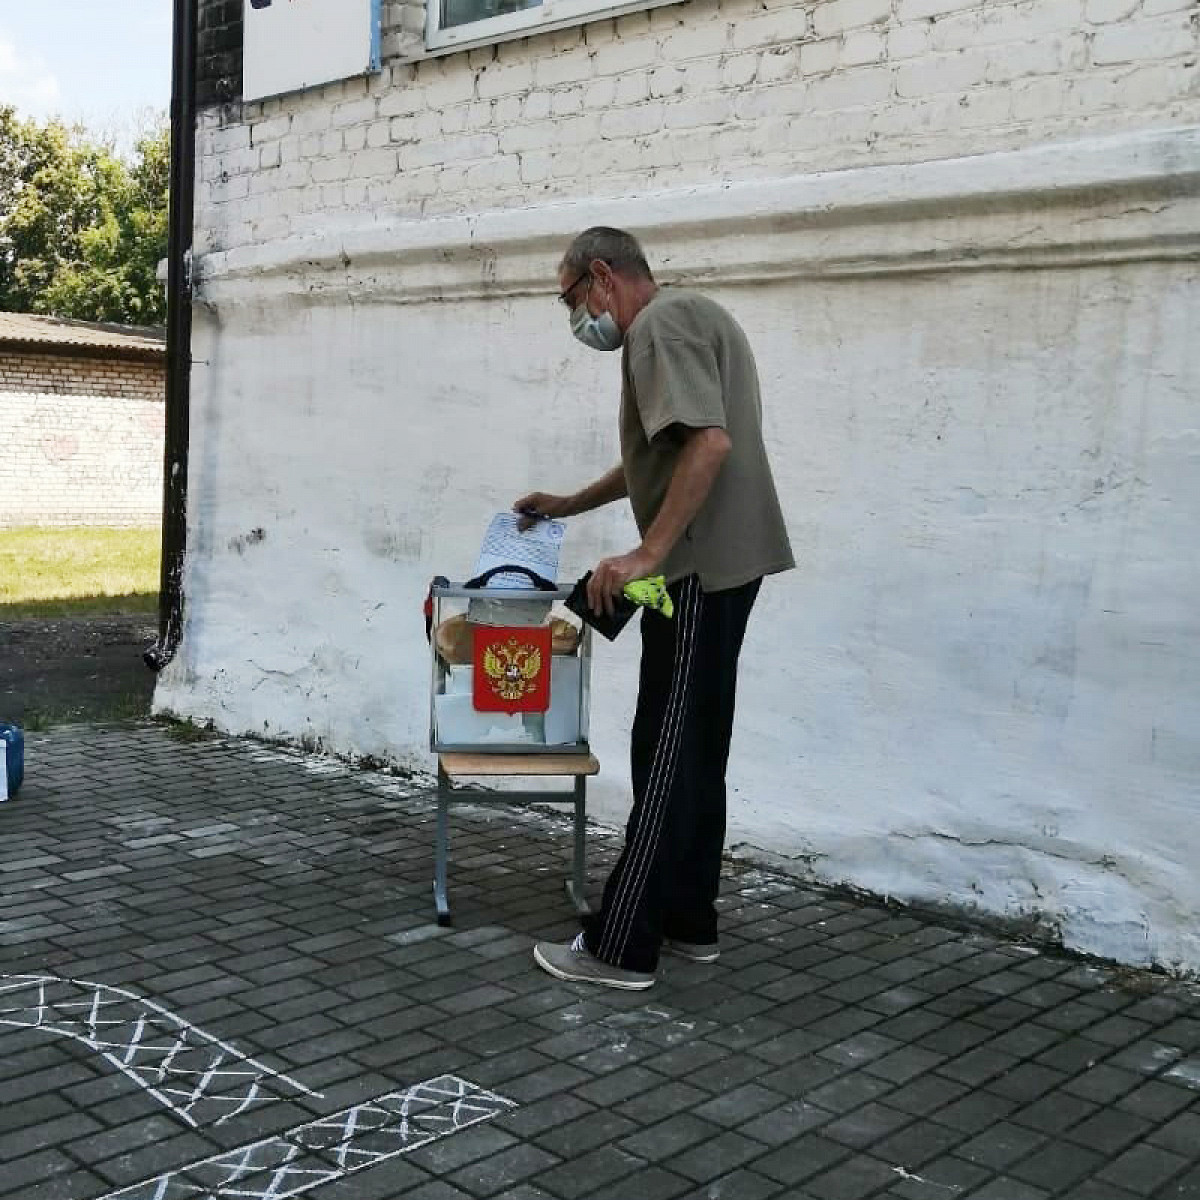 Сани, багажник, пень и вигвам. Как выглядят избирательные участки в разных городах России